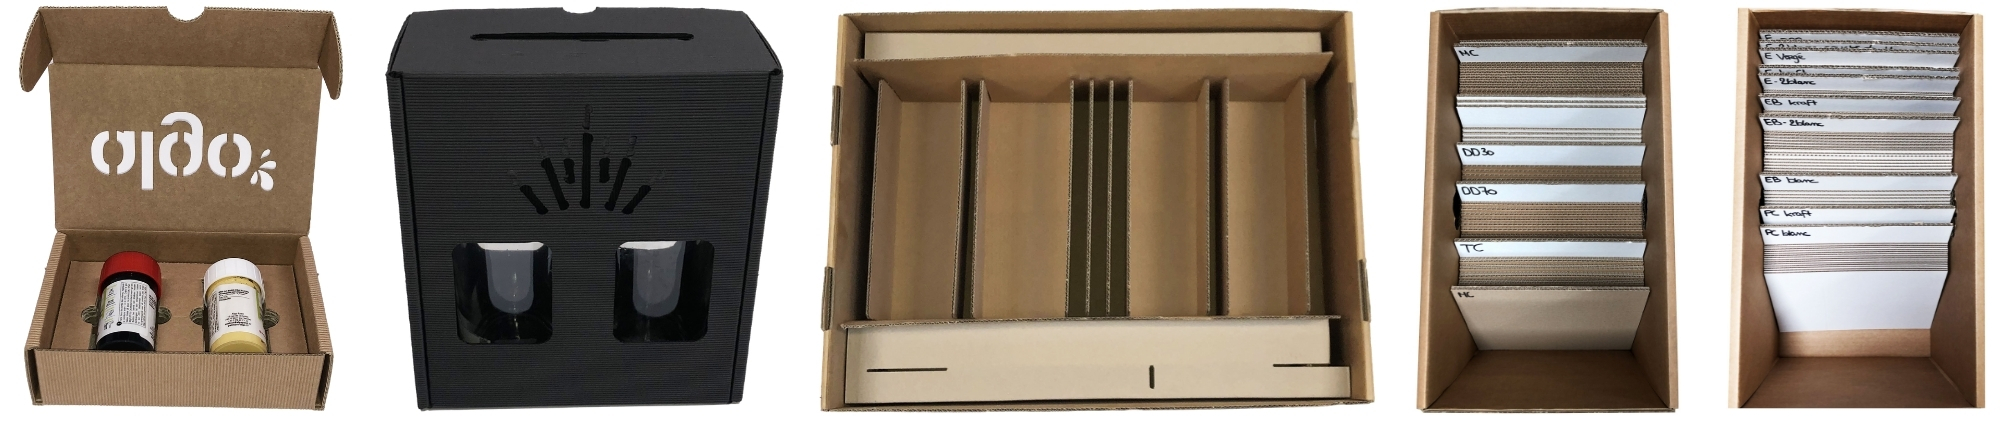 Cartonnage Bretagne Service : Fabricant boite carton bretagne 